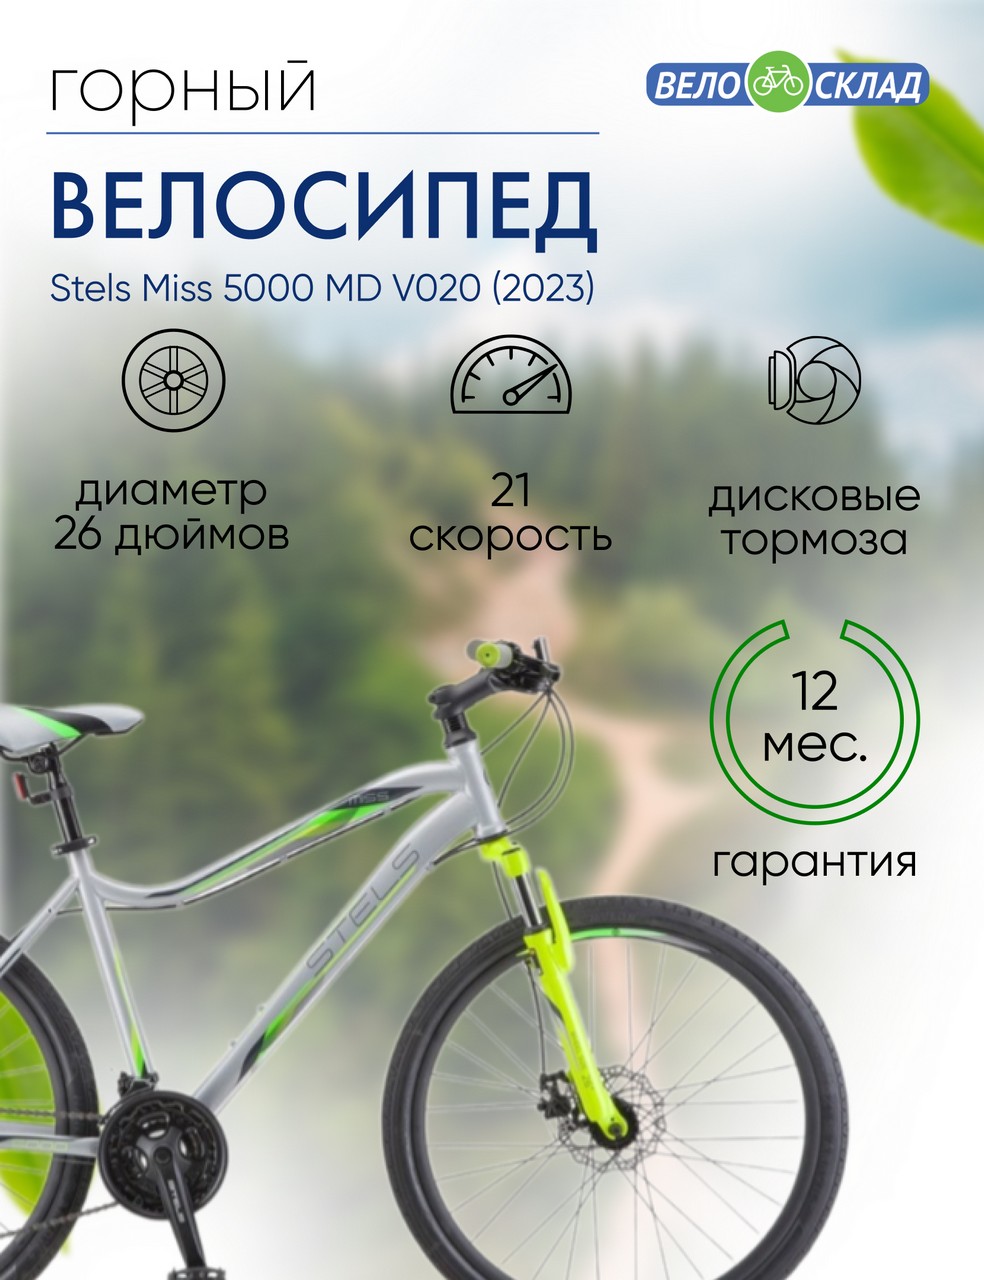 Женский велосипед Stels Miss 5000 MD V020, год 2023, цвет Серебристый-Зеленый, ростовка 18